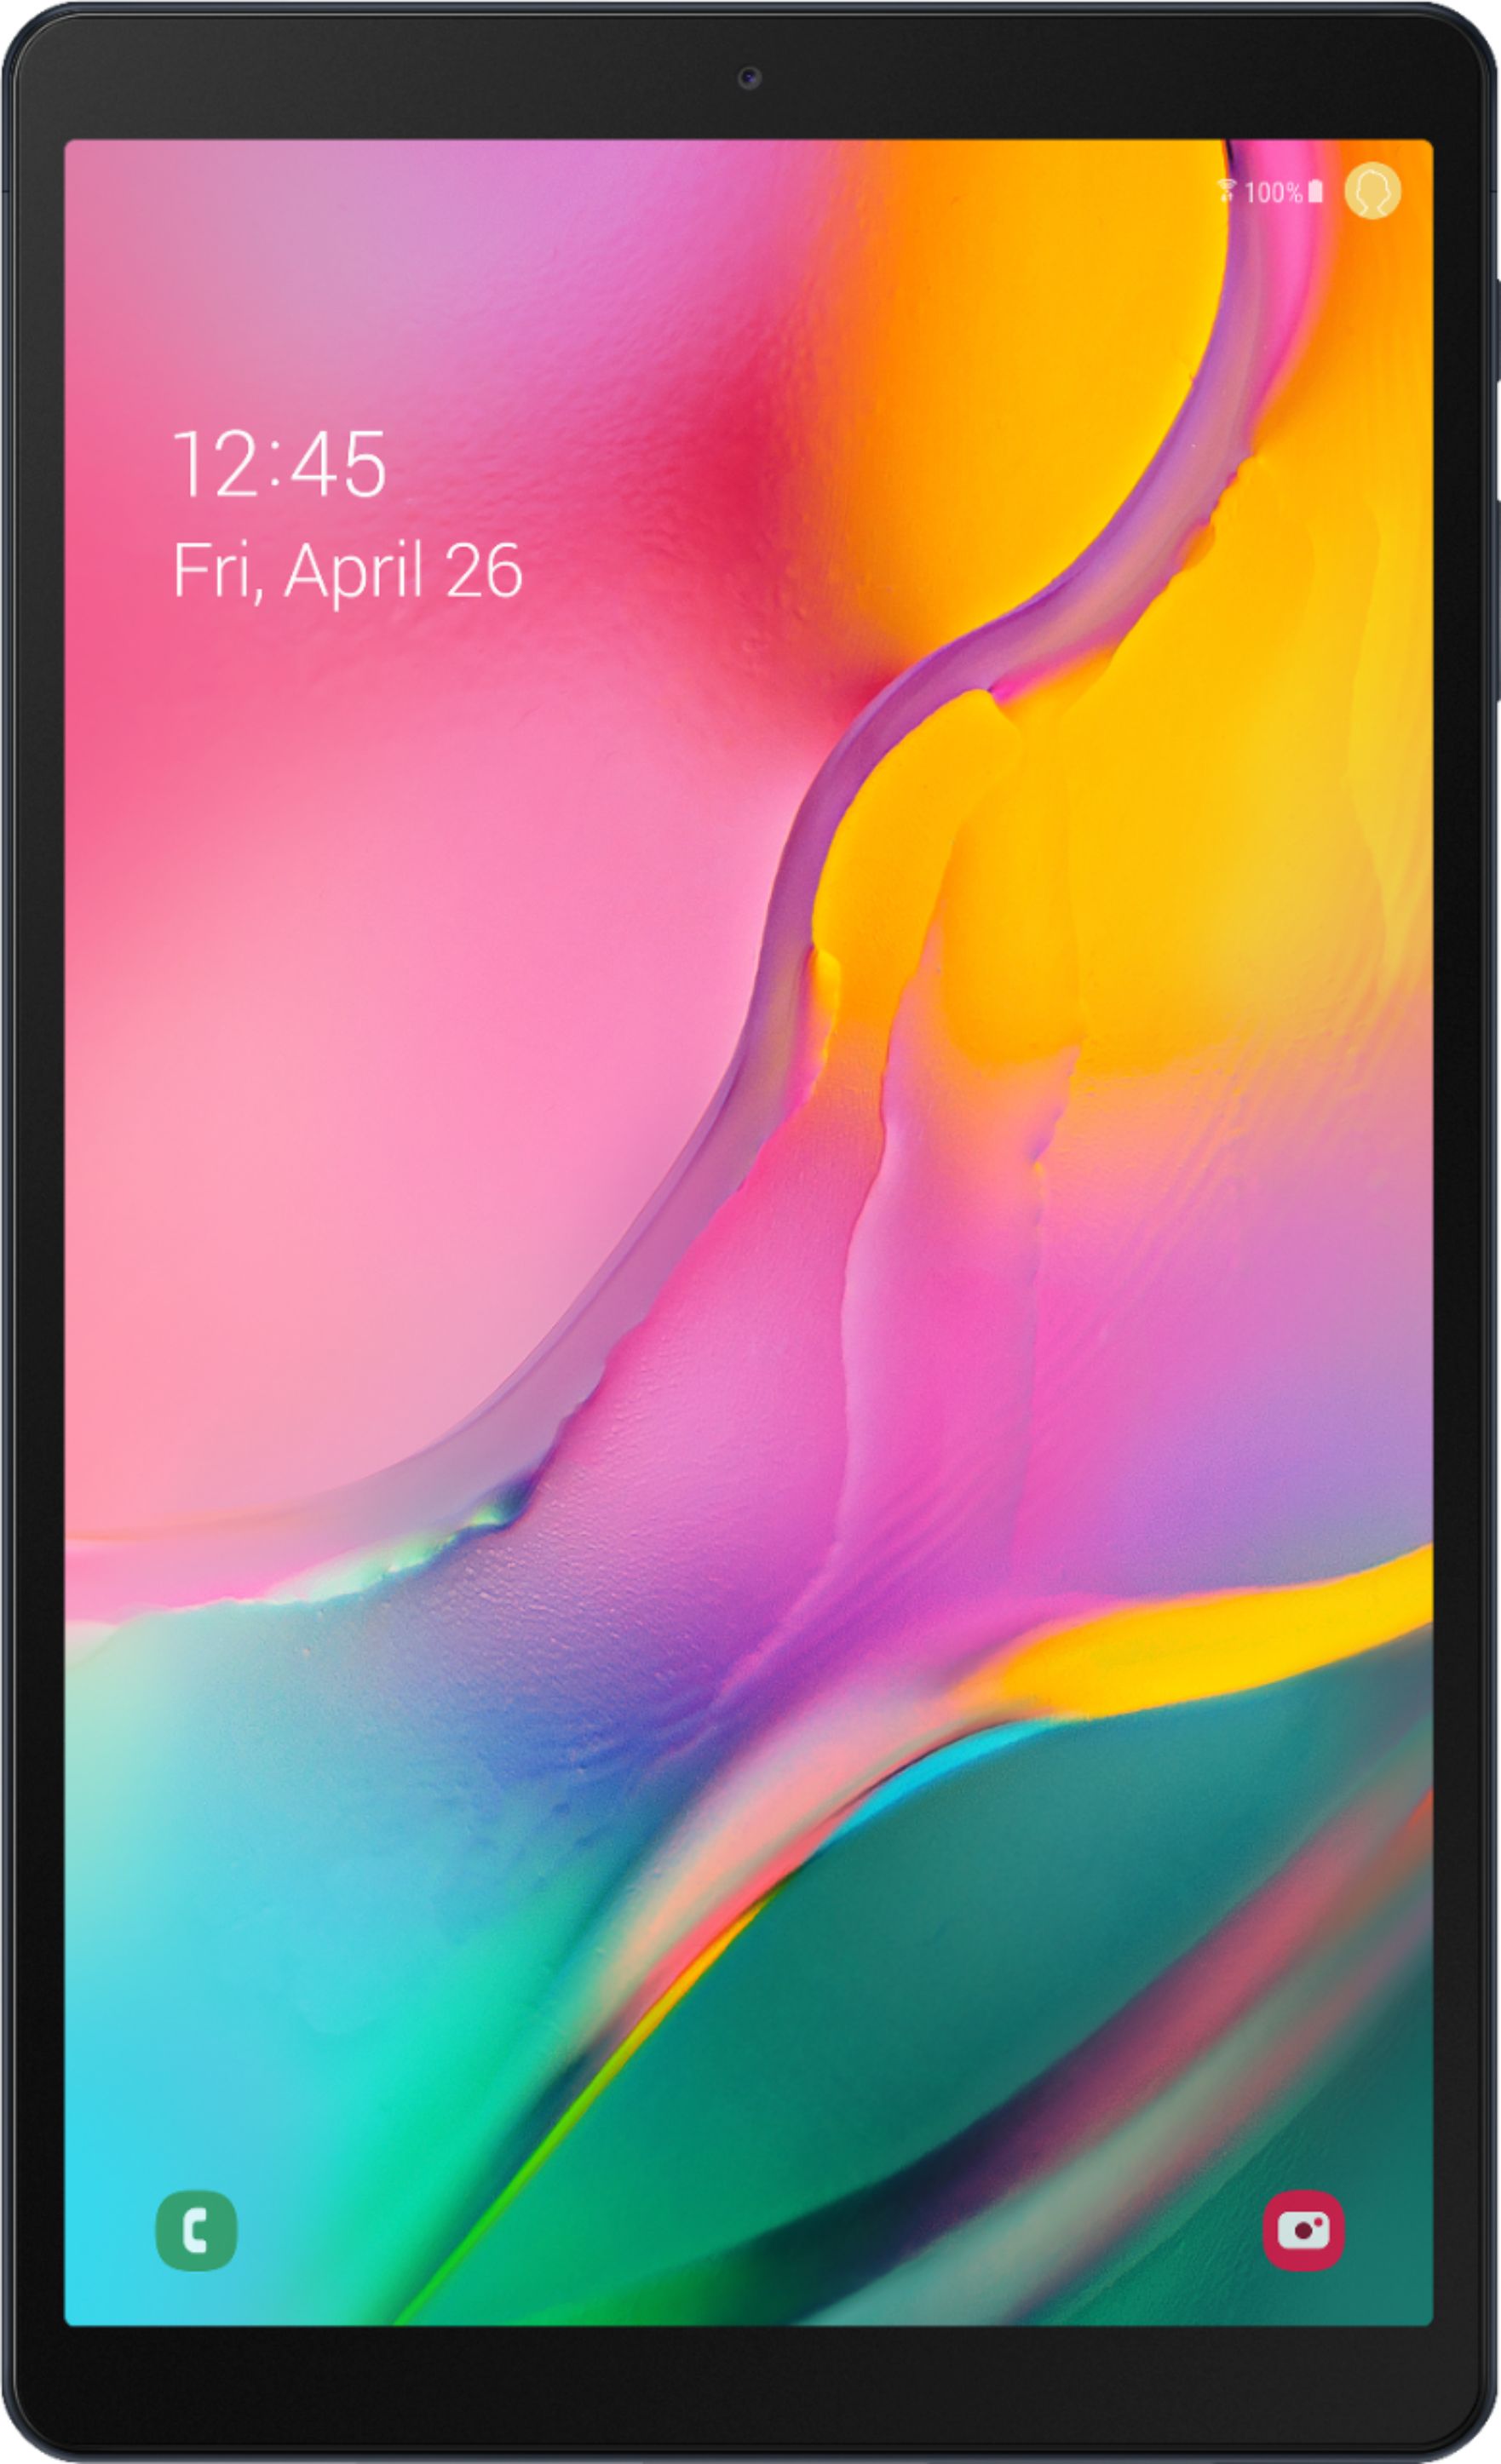 Samsung Galaxy Tab A (2019) 10.1" 128GB Black SM-T510NZKGXAR - Best Buy